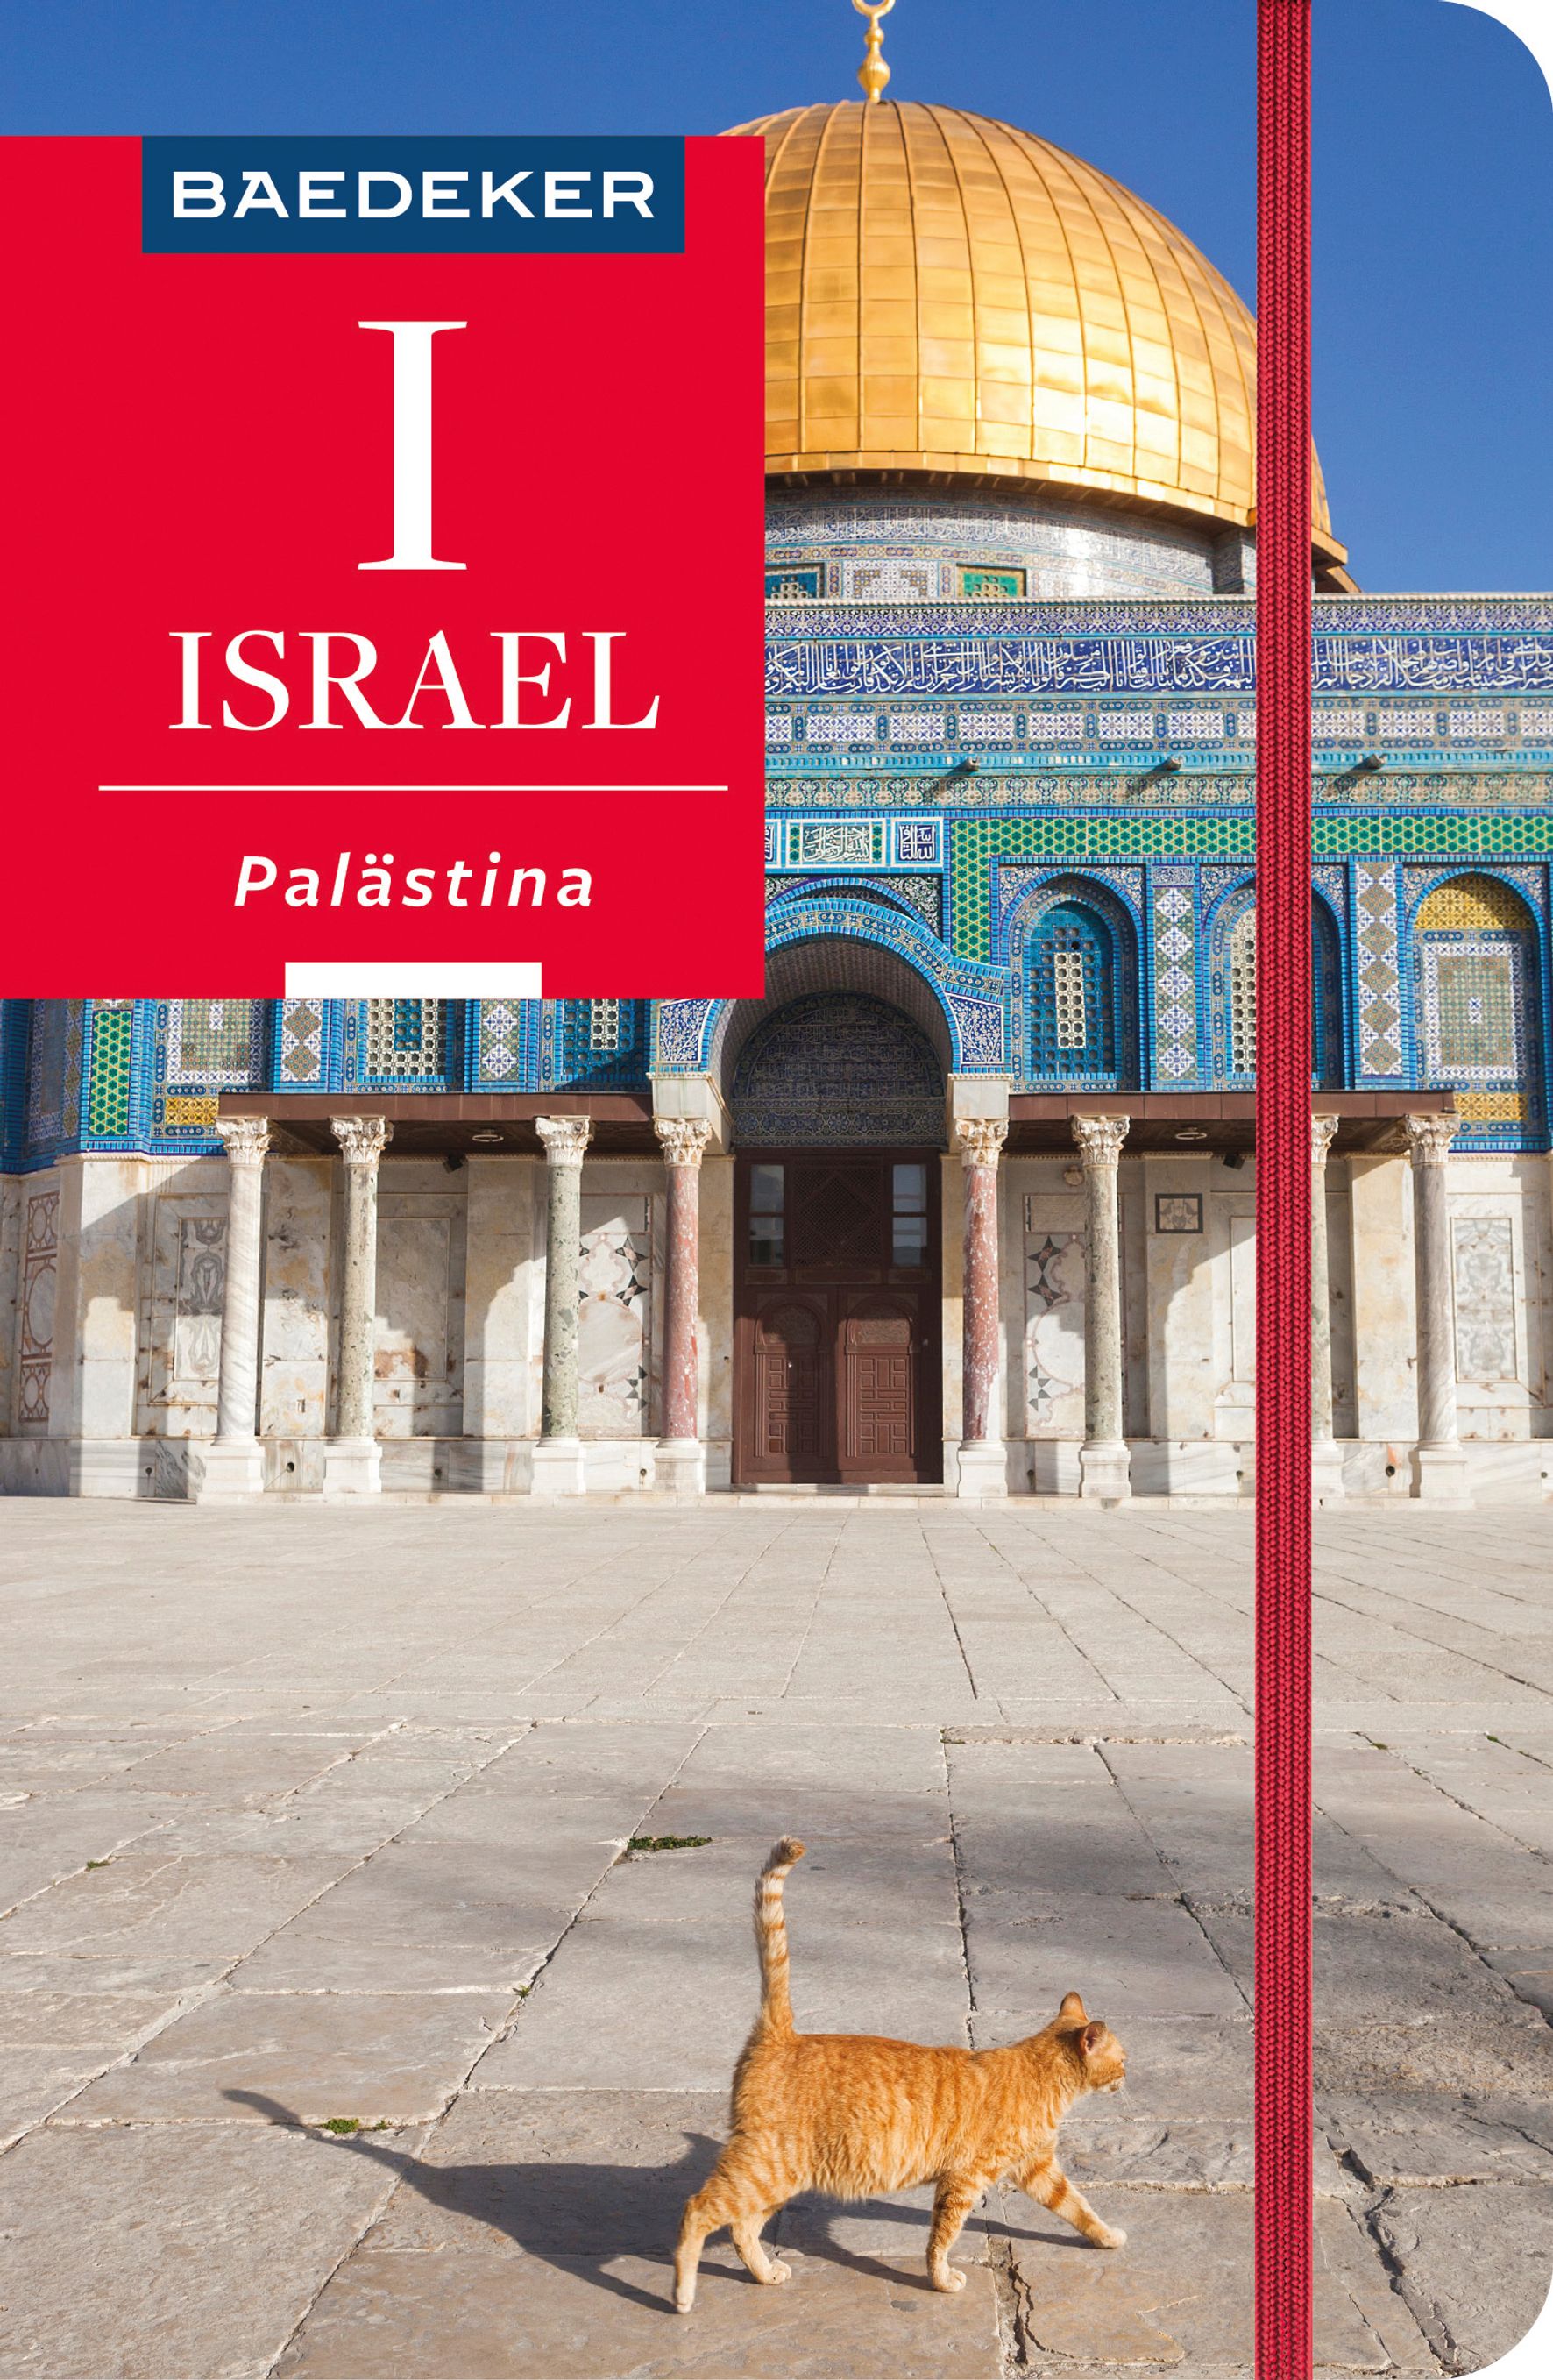 Baedeker Israel, Palästina (eBook)